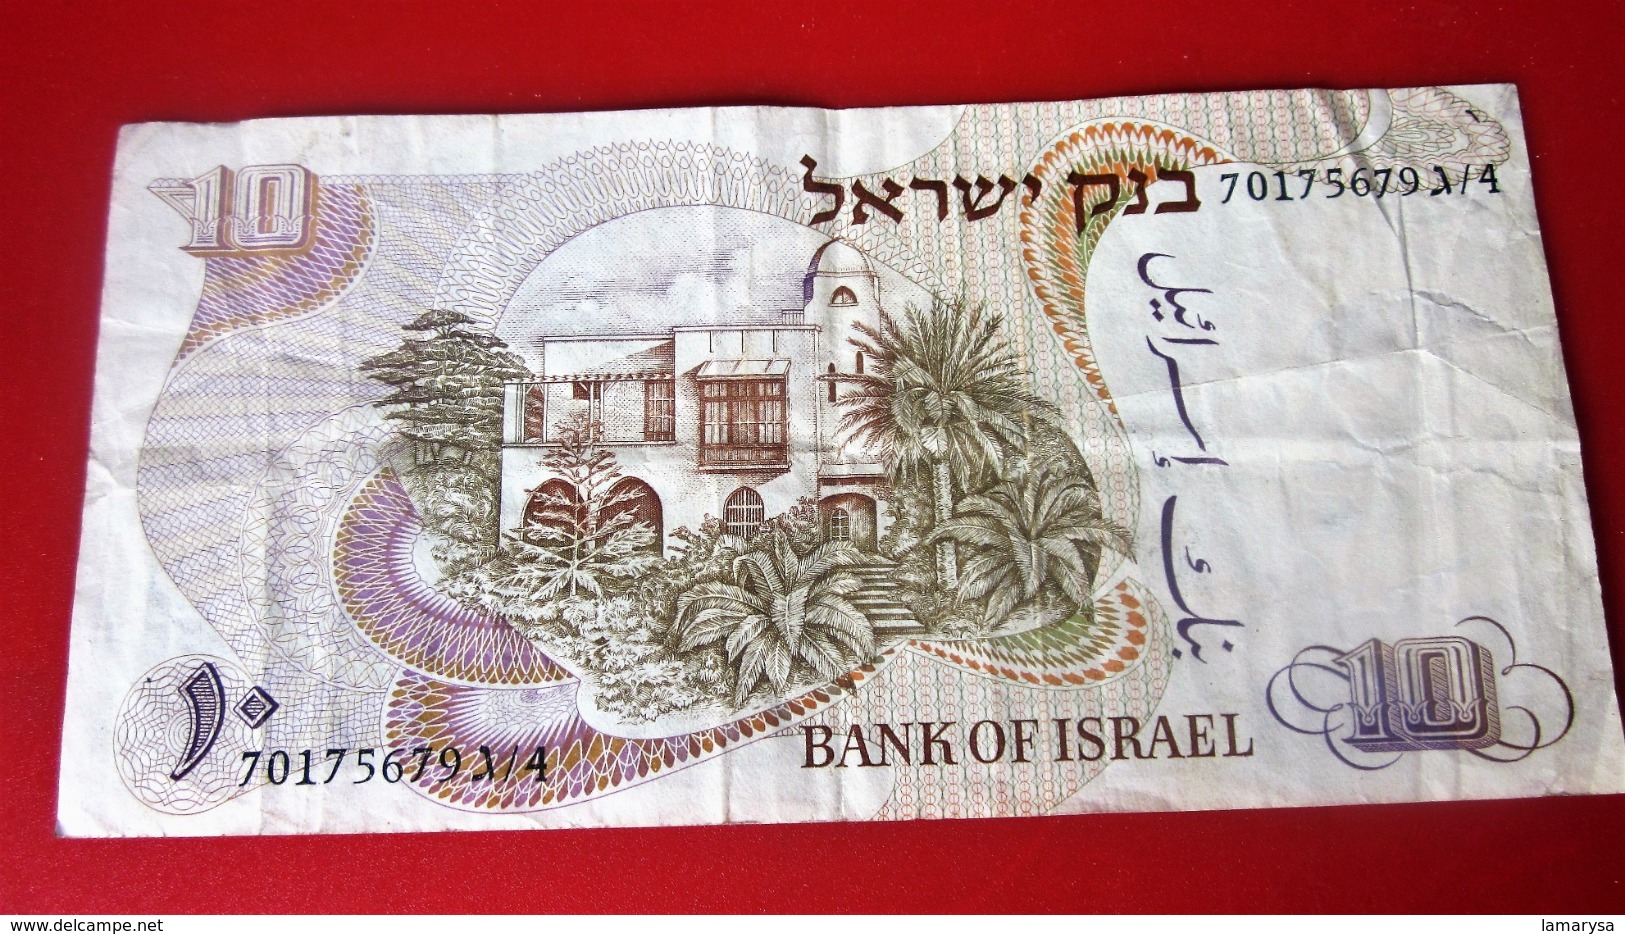 המץ ליוט ישראל  1968  BILLET DE BANQUE BANK OF ISRAËL 10  LIRES ESSER LIROT ISRAELI  כרטיס בנק   BANK TICKET - Israel